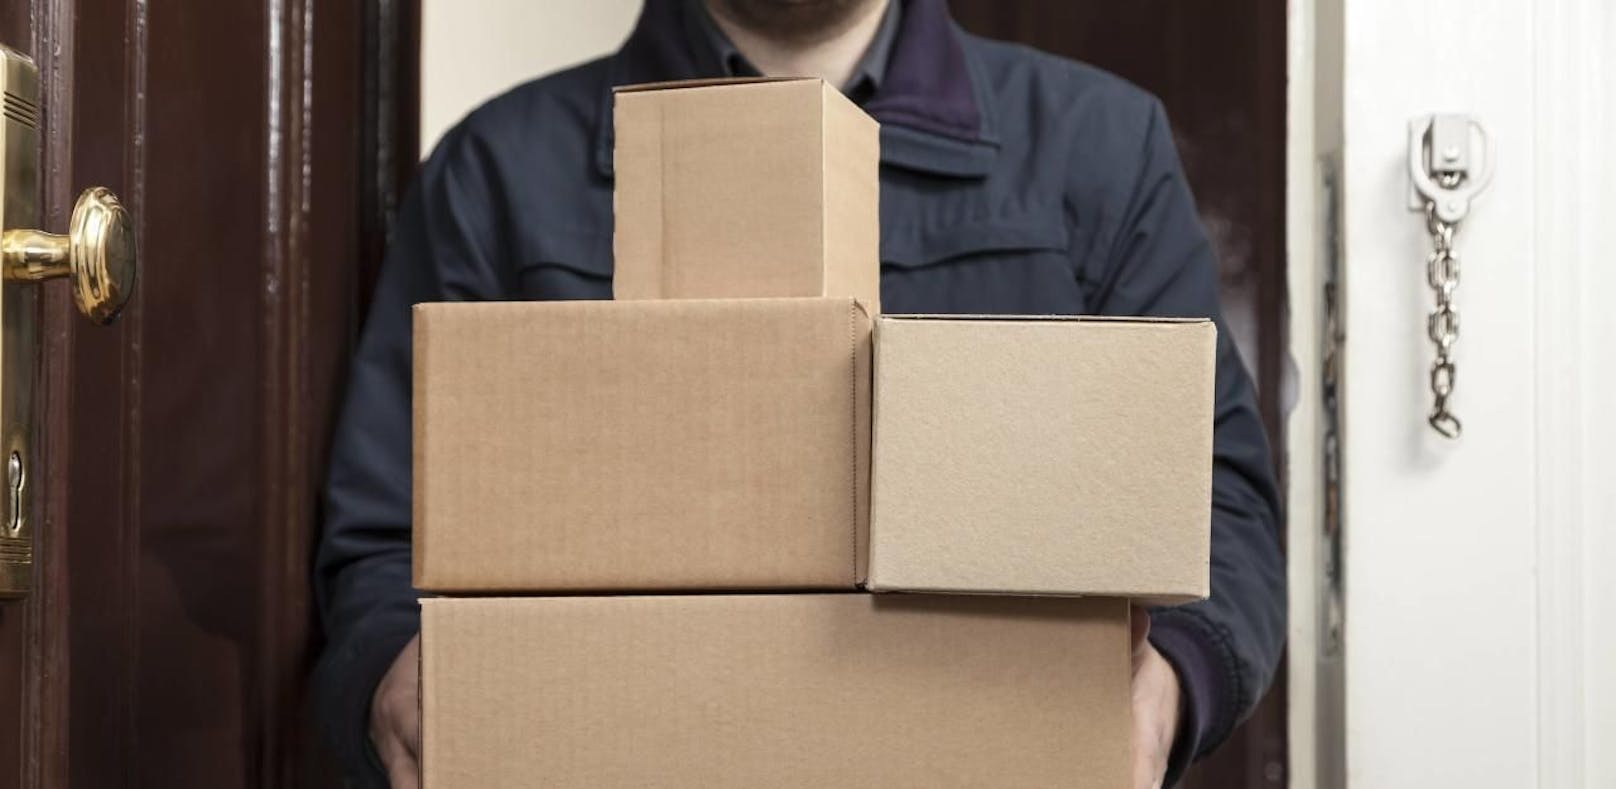 Paketdienst-Trick kostet 45-Jährige Tausende Euro